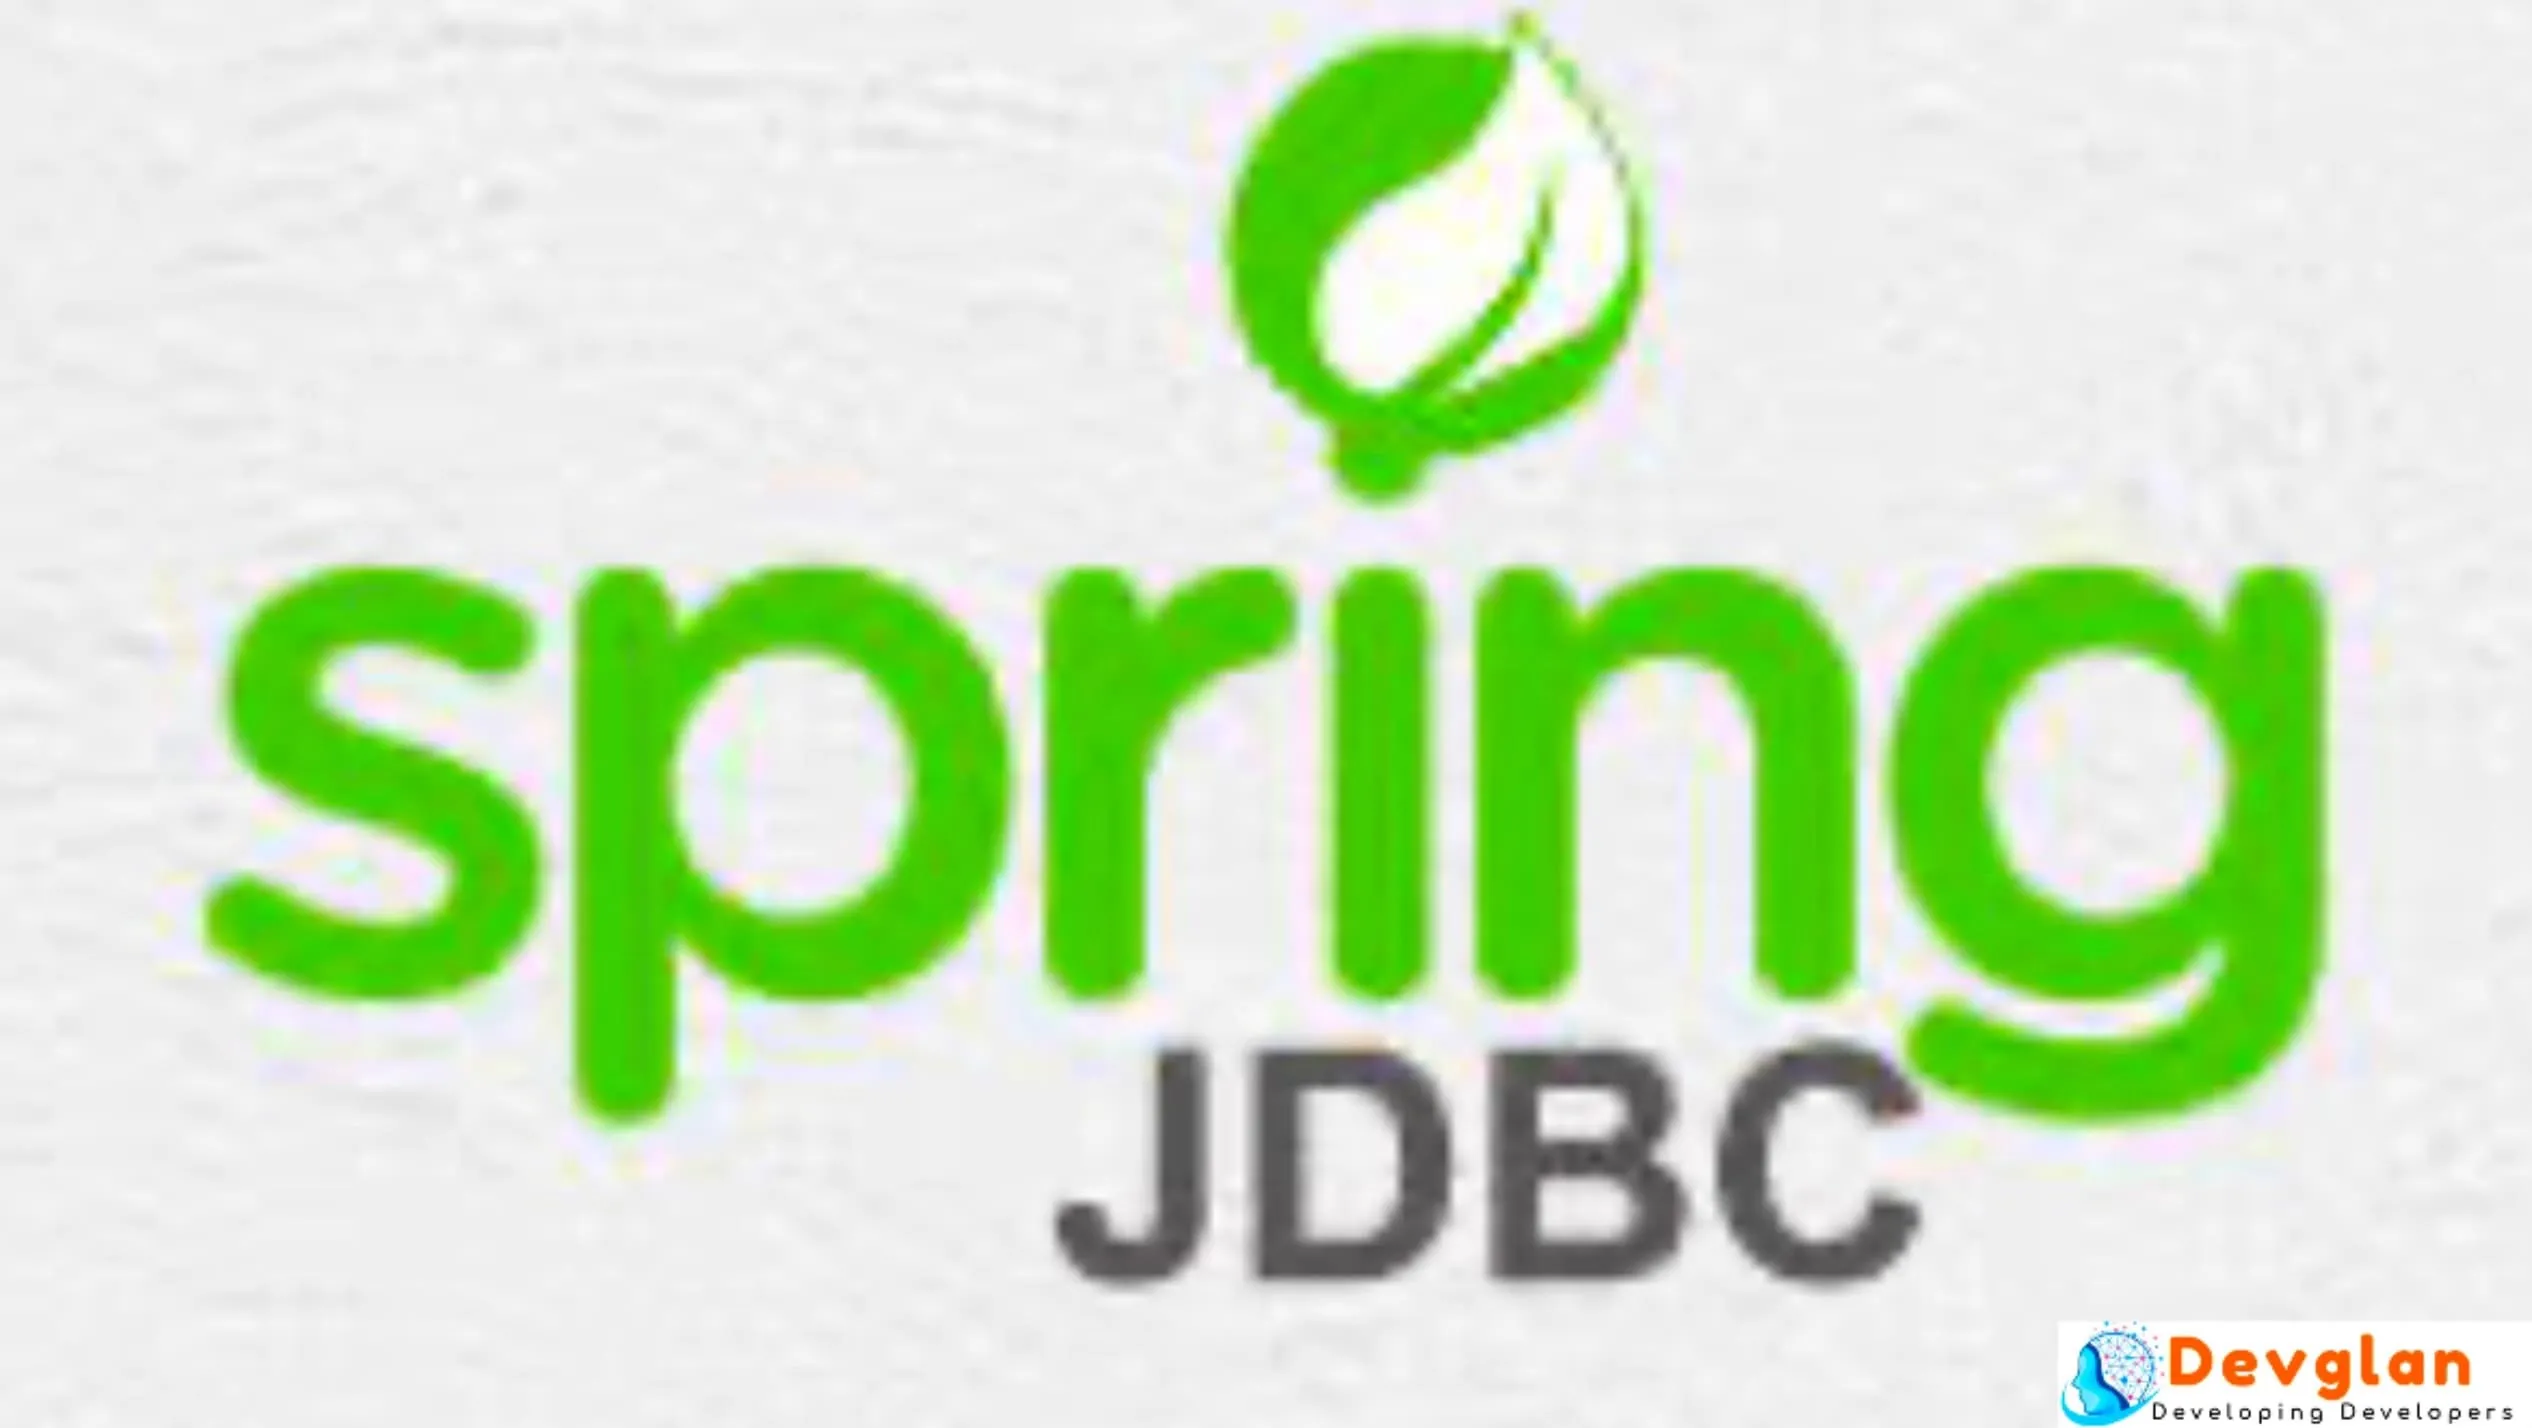 Spring Jdbc